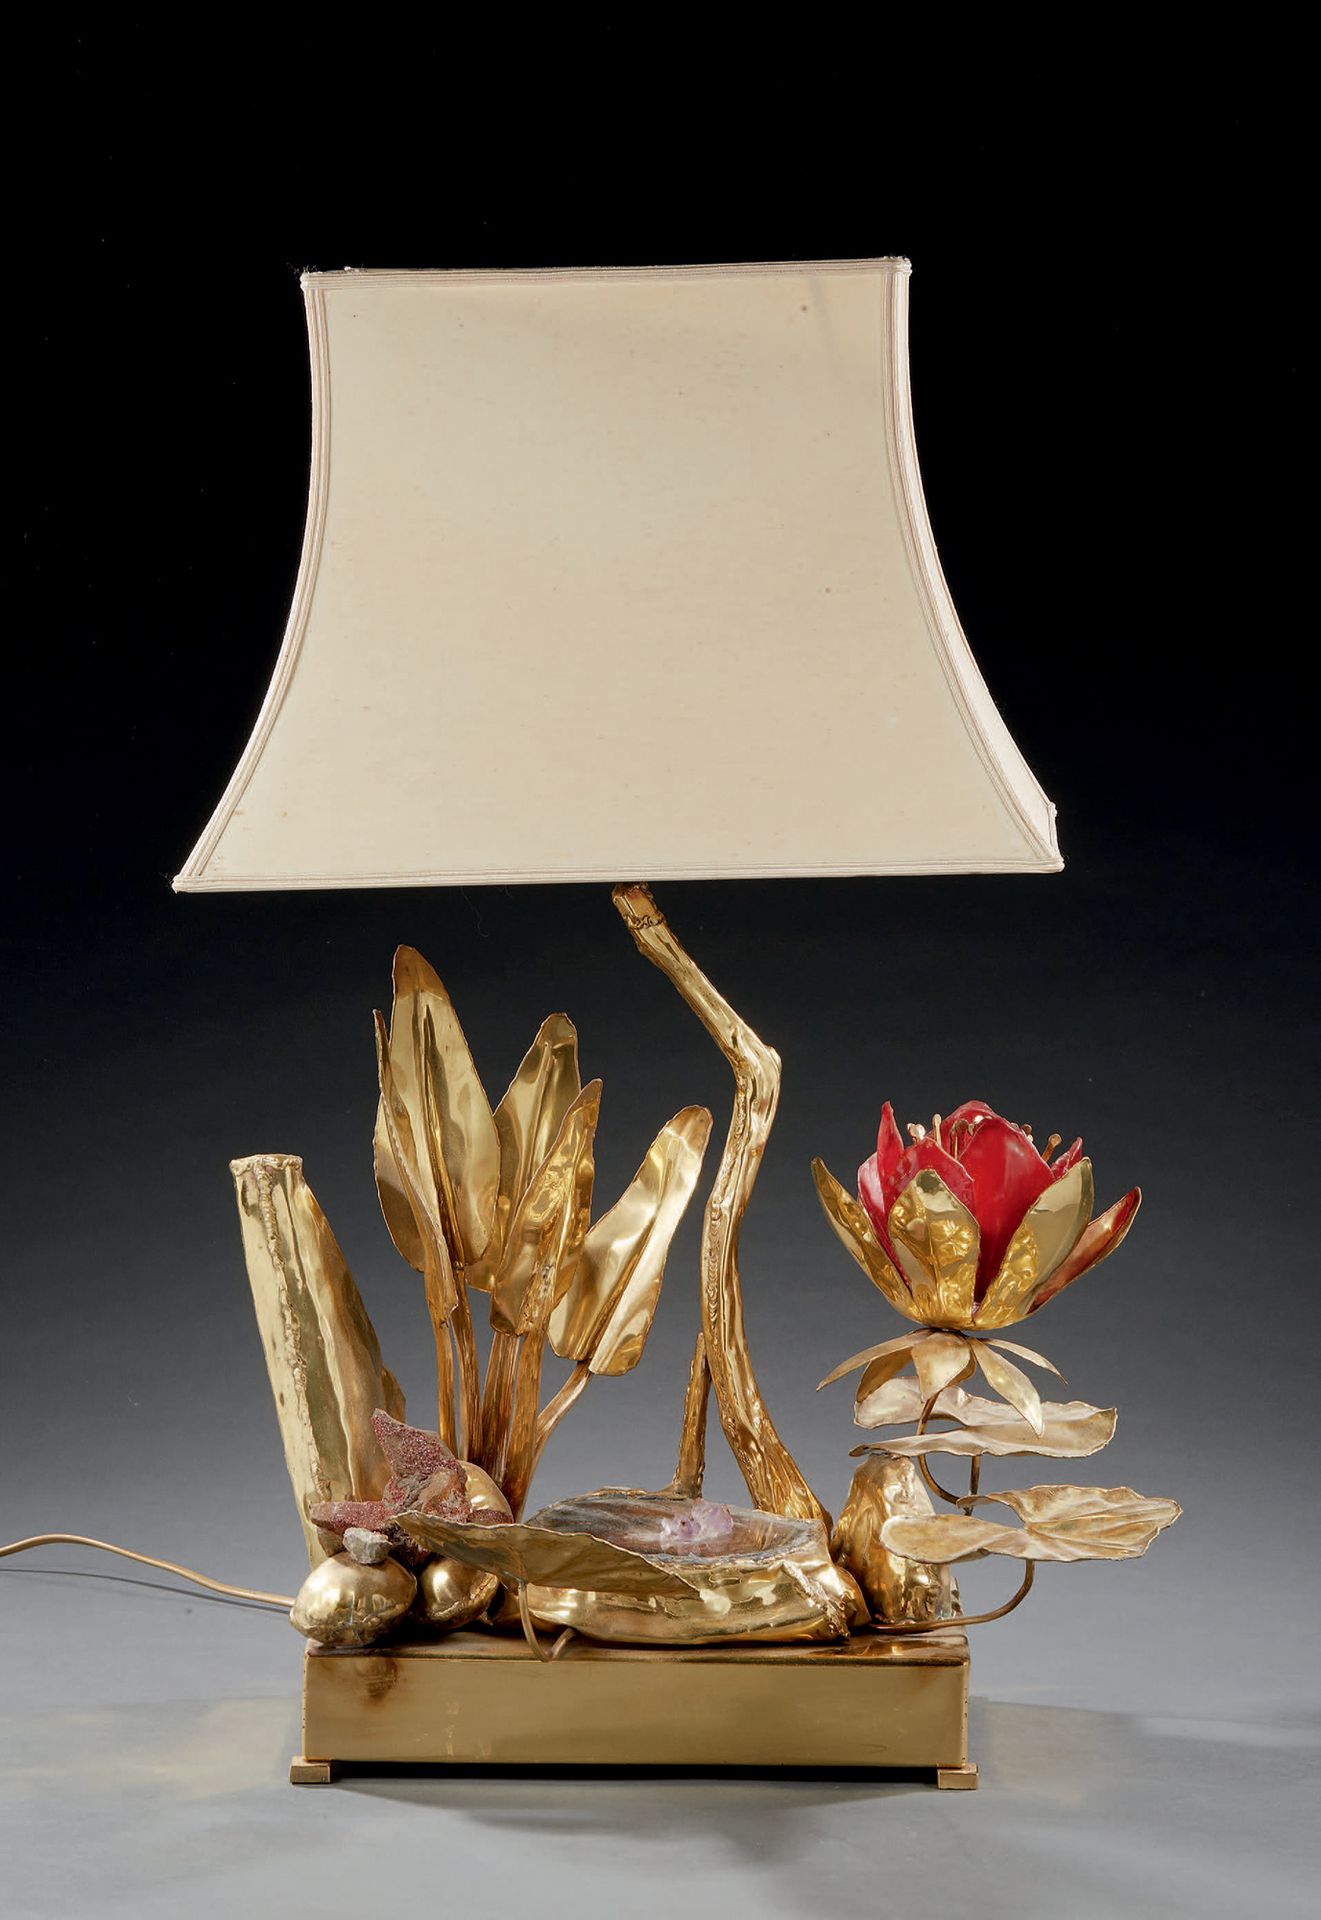 TRAVAIL DES ANNÉES 1970 
Lampe aus vergoldetem Metall, Hartstein und rotem Glas &hellip;